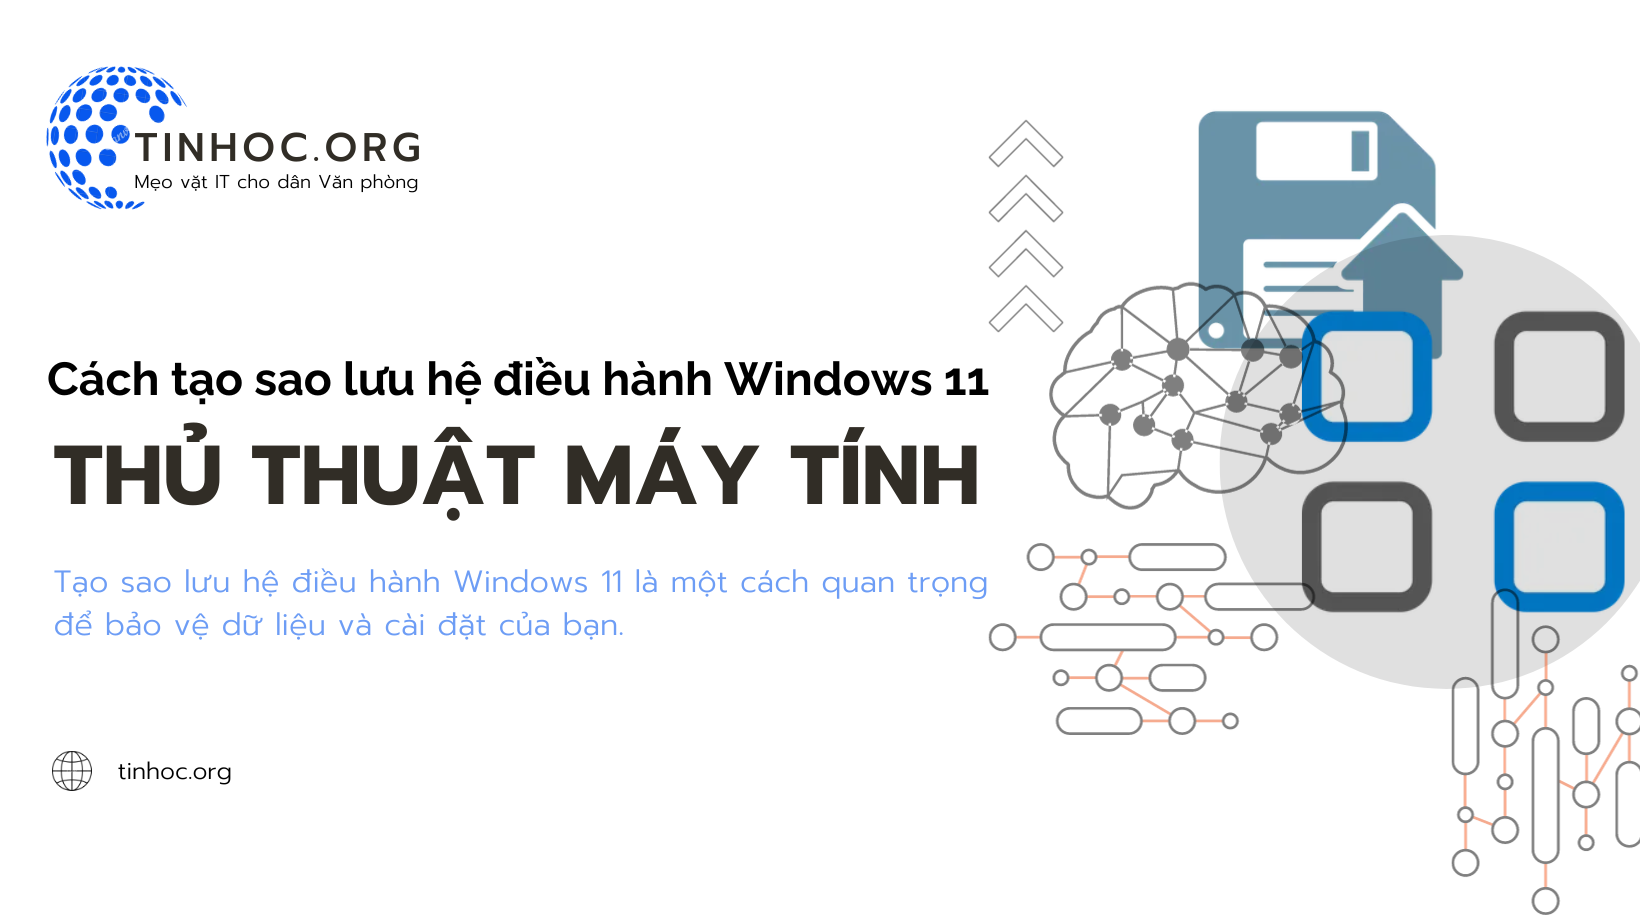 Cách tạo sao lưu hệ điều hành Windows 11